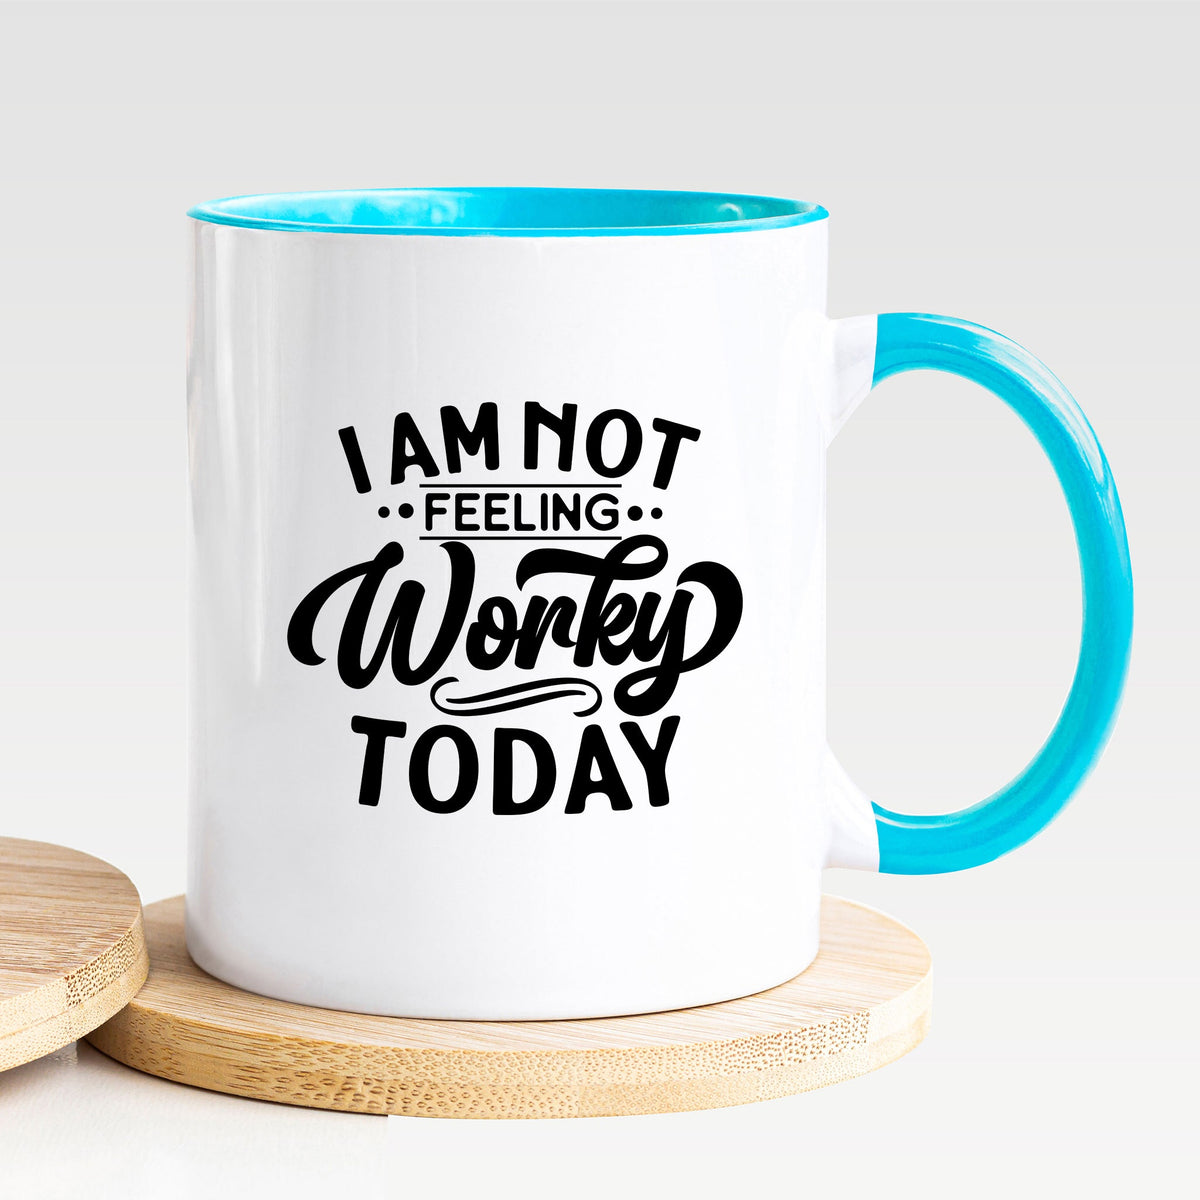 I Am Not Feeling Worky Today - Mug